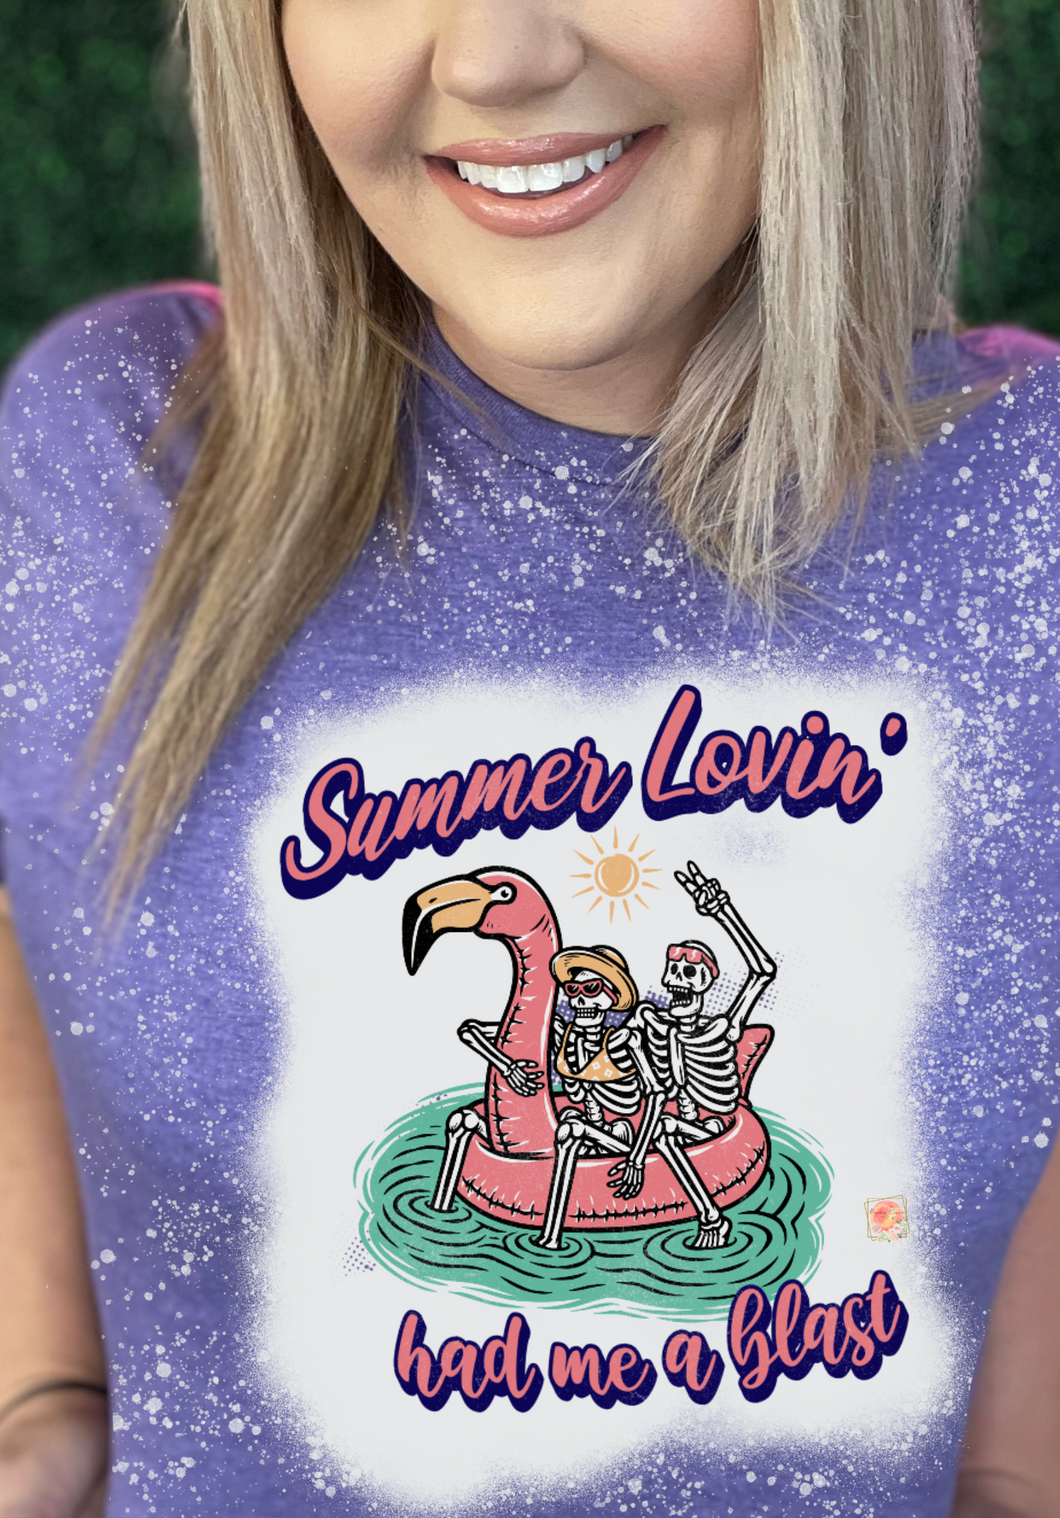 Summer lovin’ had me a blast